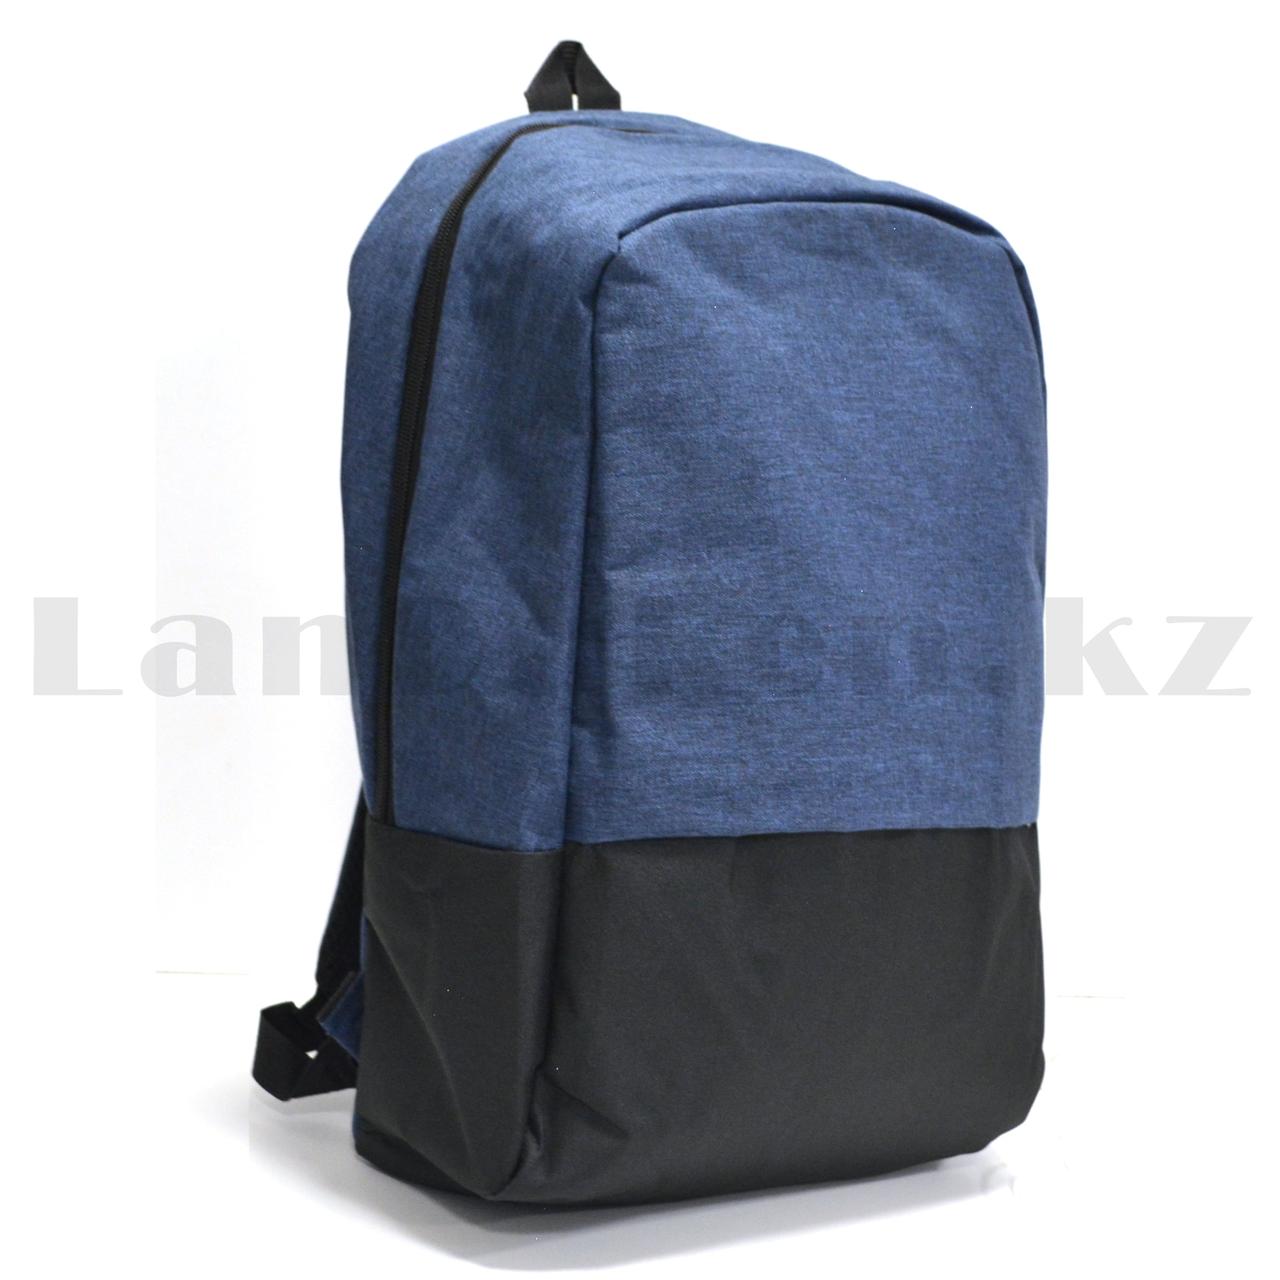 Городской рюкзак с USB портом, синий с черным, фото 1